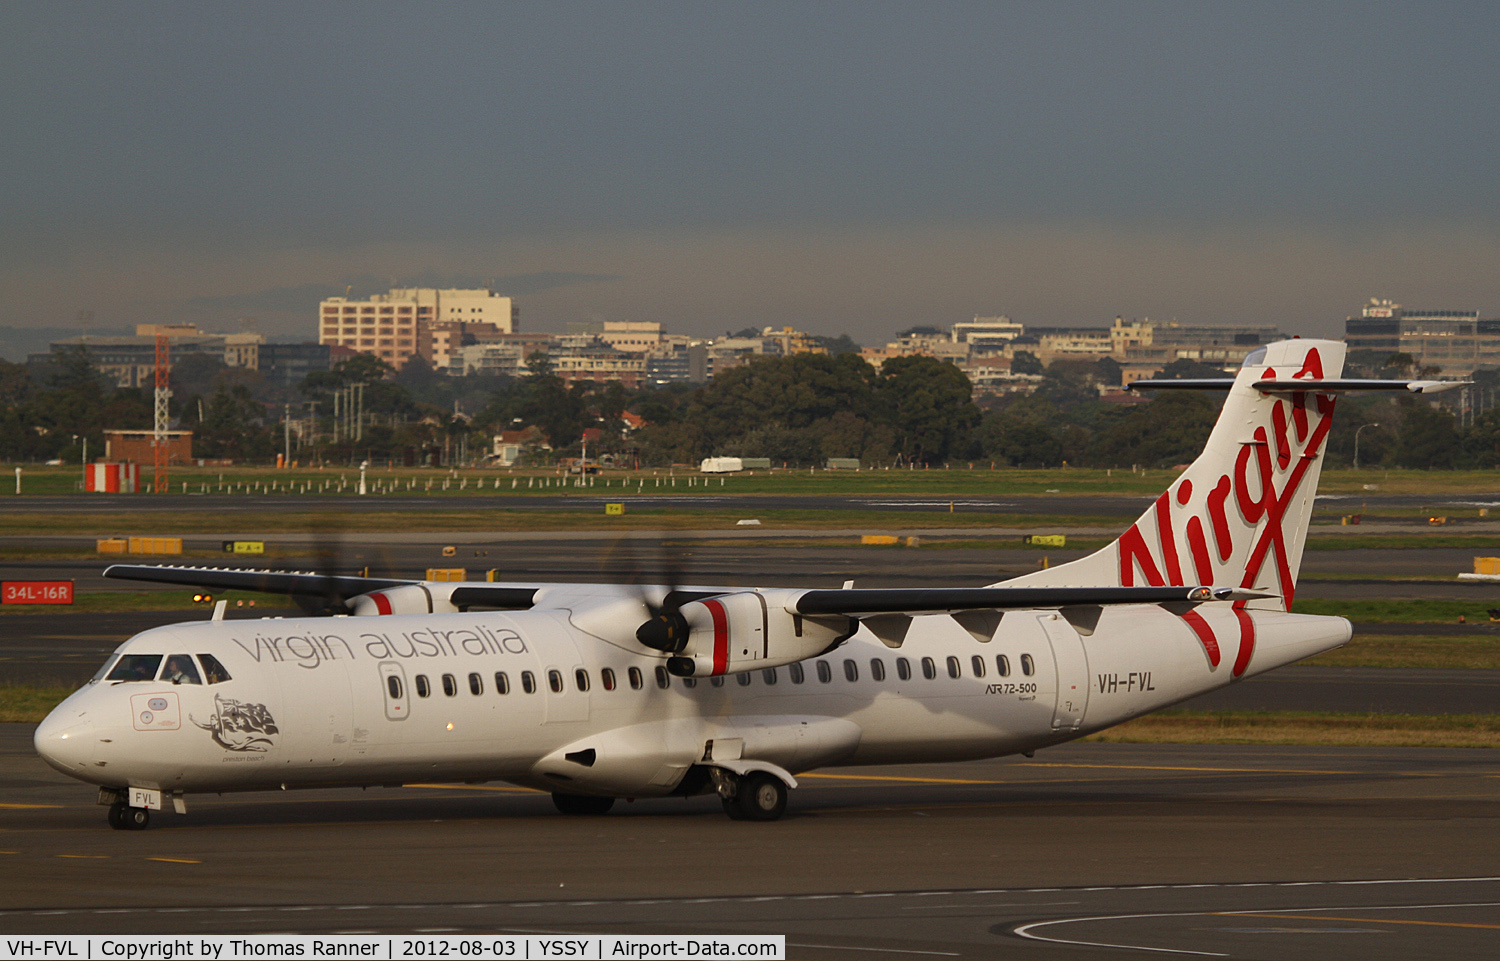 VH-FVL, 2011 ATR 72-212A C/N 974, Virgin Australia ATR 72